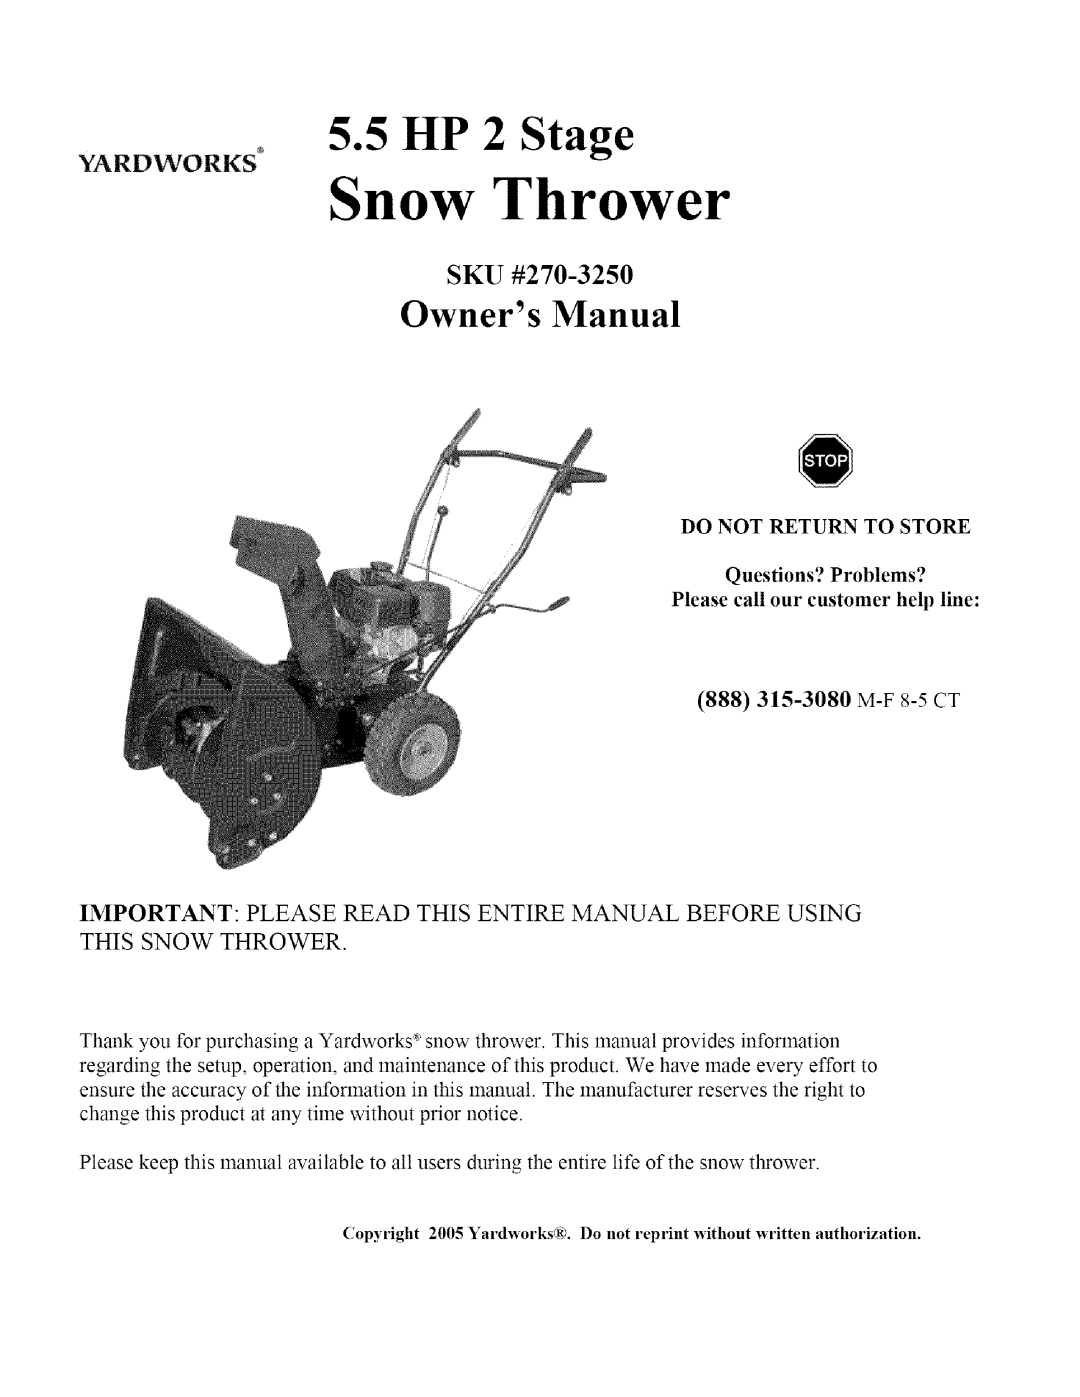 Sears owner manual Snow Thrower, 5.5 HP 2 Stage, SKU #270-3250 